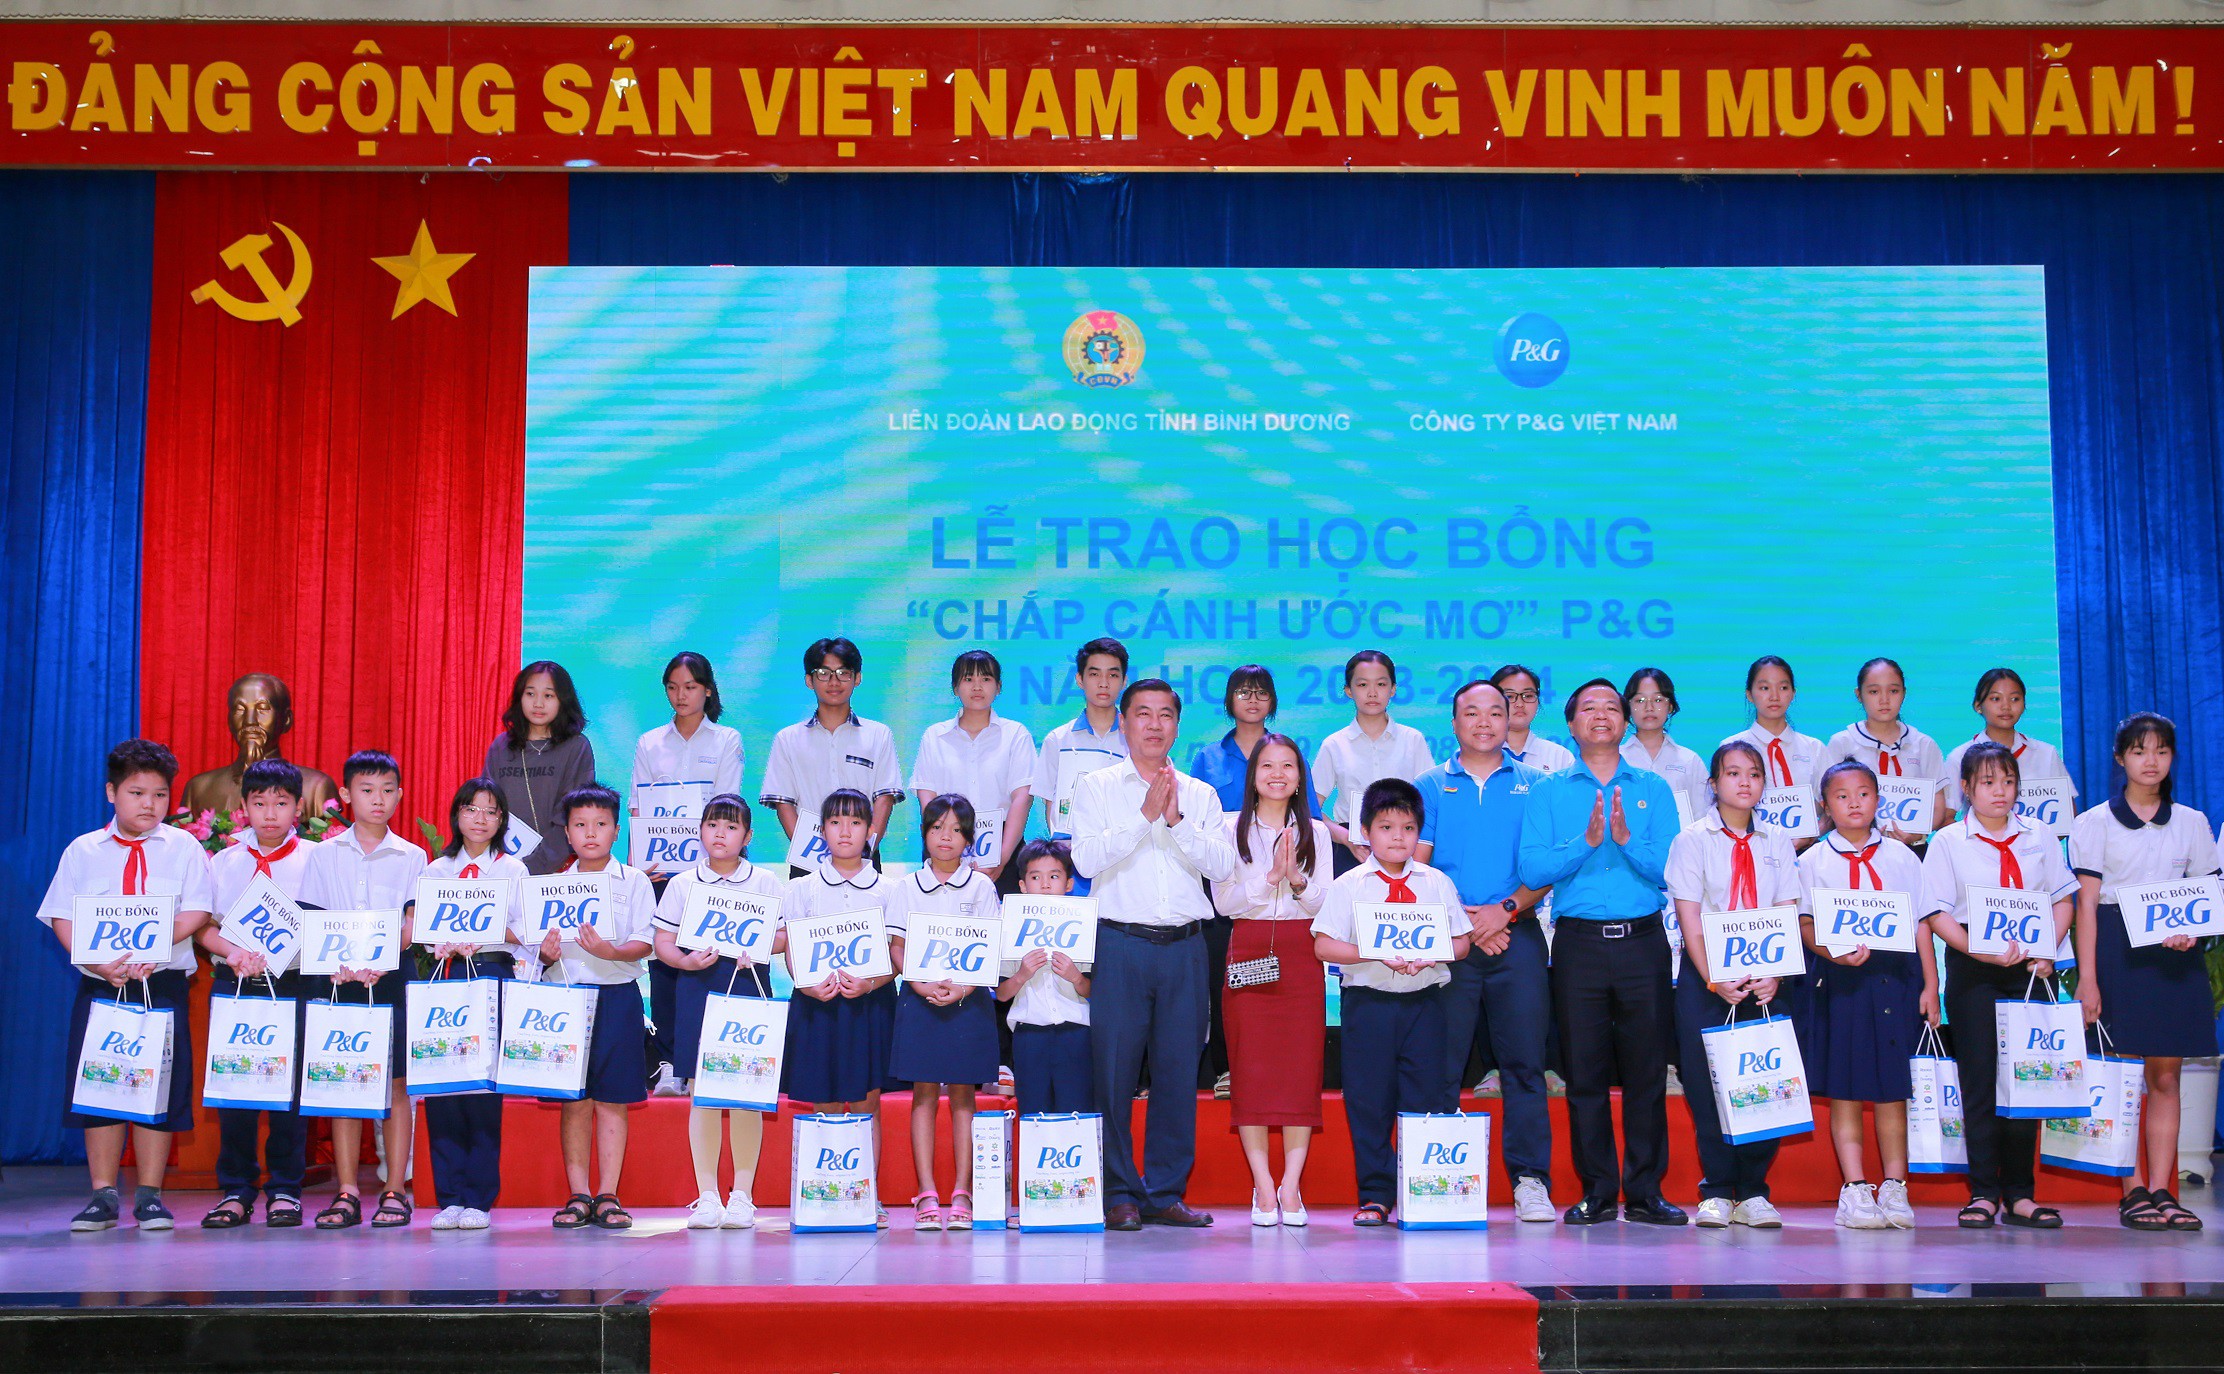 Lễ trao học bổng “Chắp cánh ước mơ” P&amp;G lần thứ 27 do Liên đoàn Lao động tỉnh Bình Dương cùng với Công ty P&amp;G Việt Nam phối hợp tổ chức